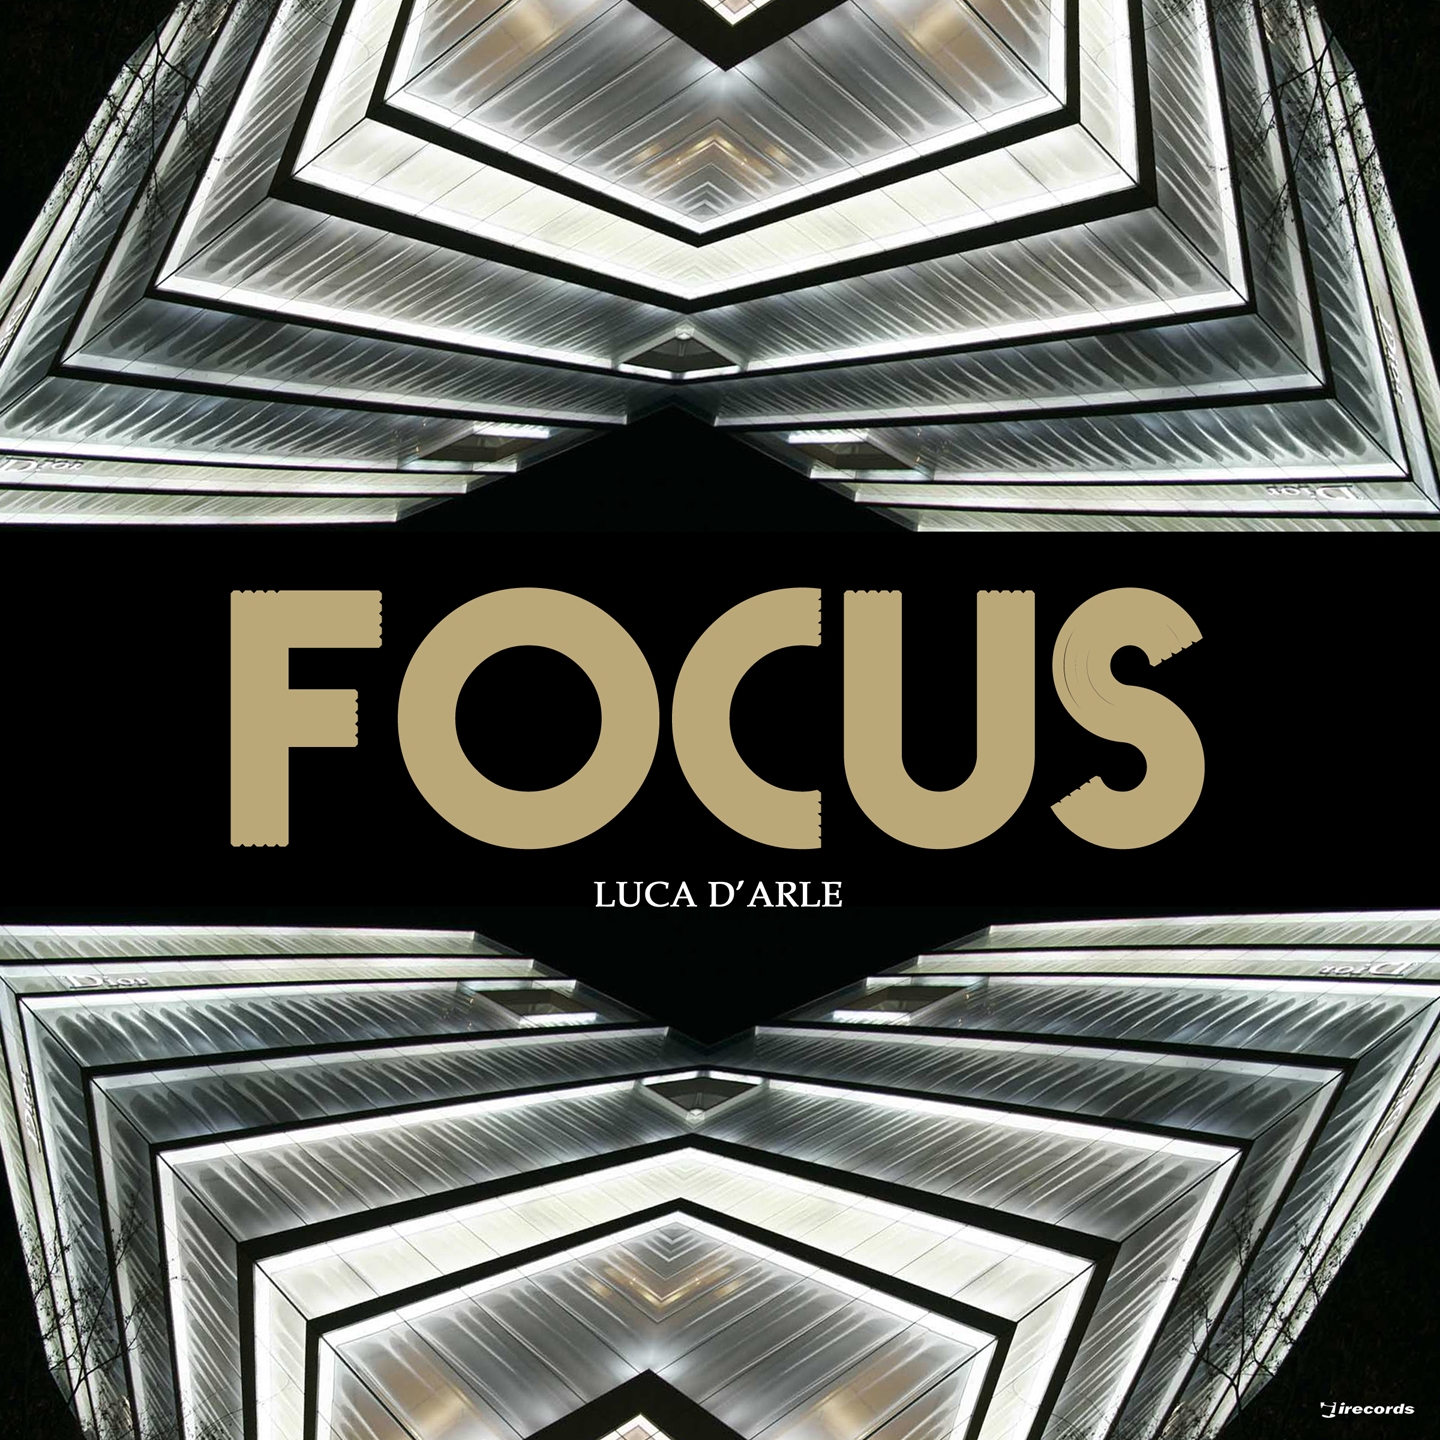 Focus: Luca d'arle